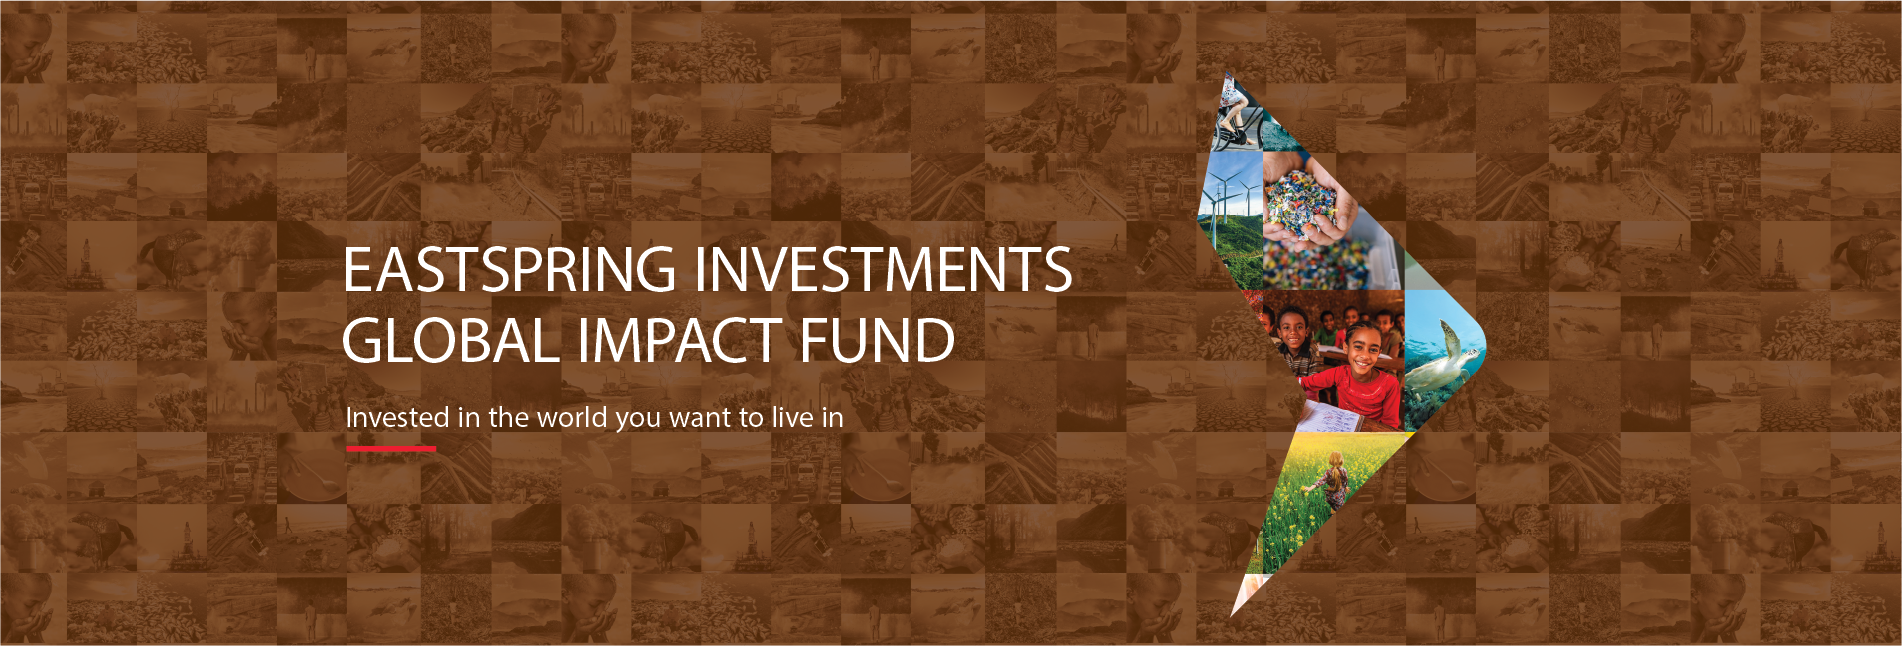 EI Global Impact Fund_Web page_Desktop